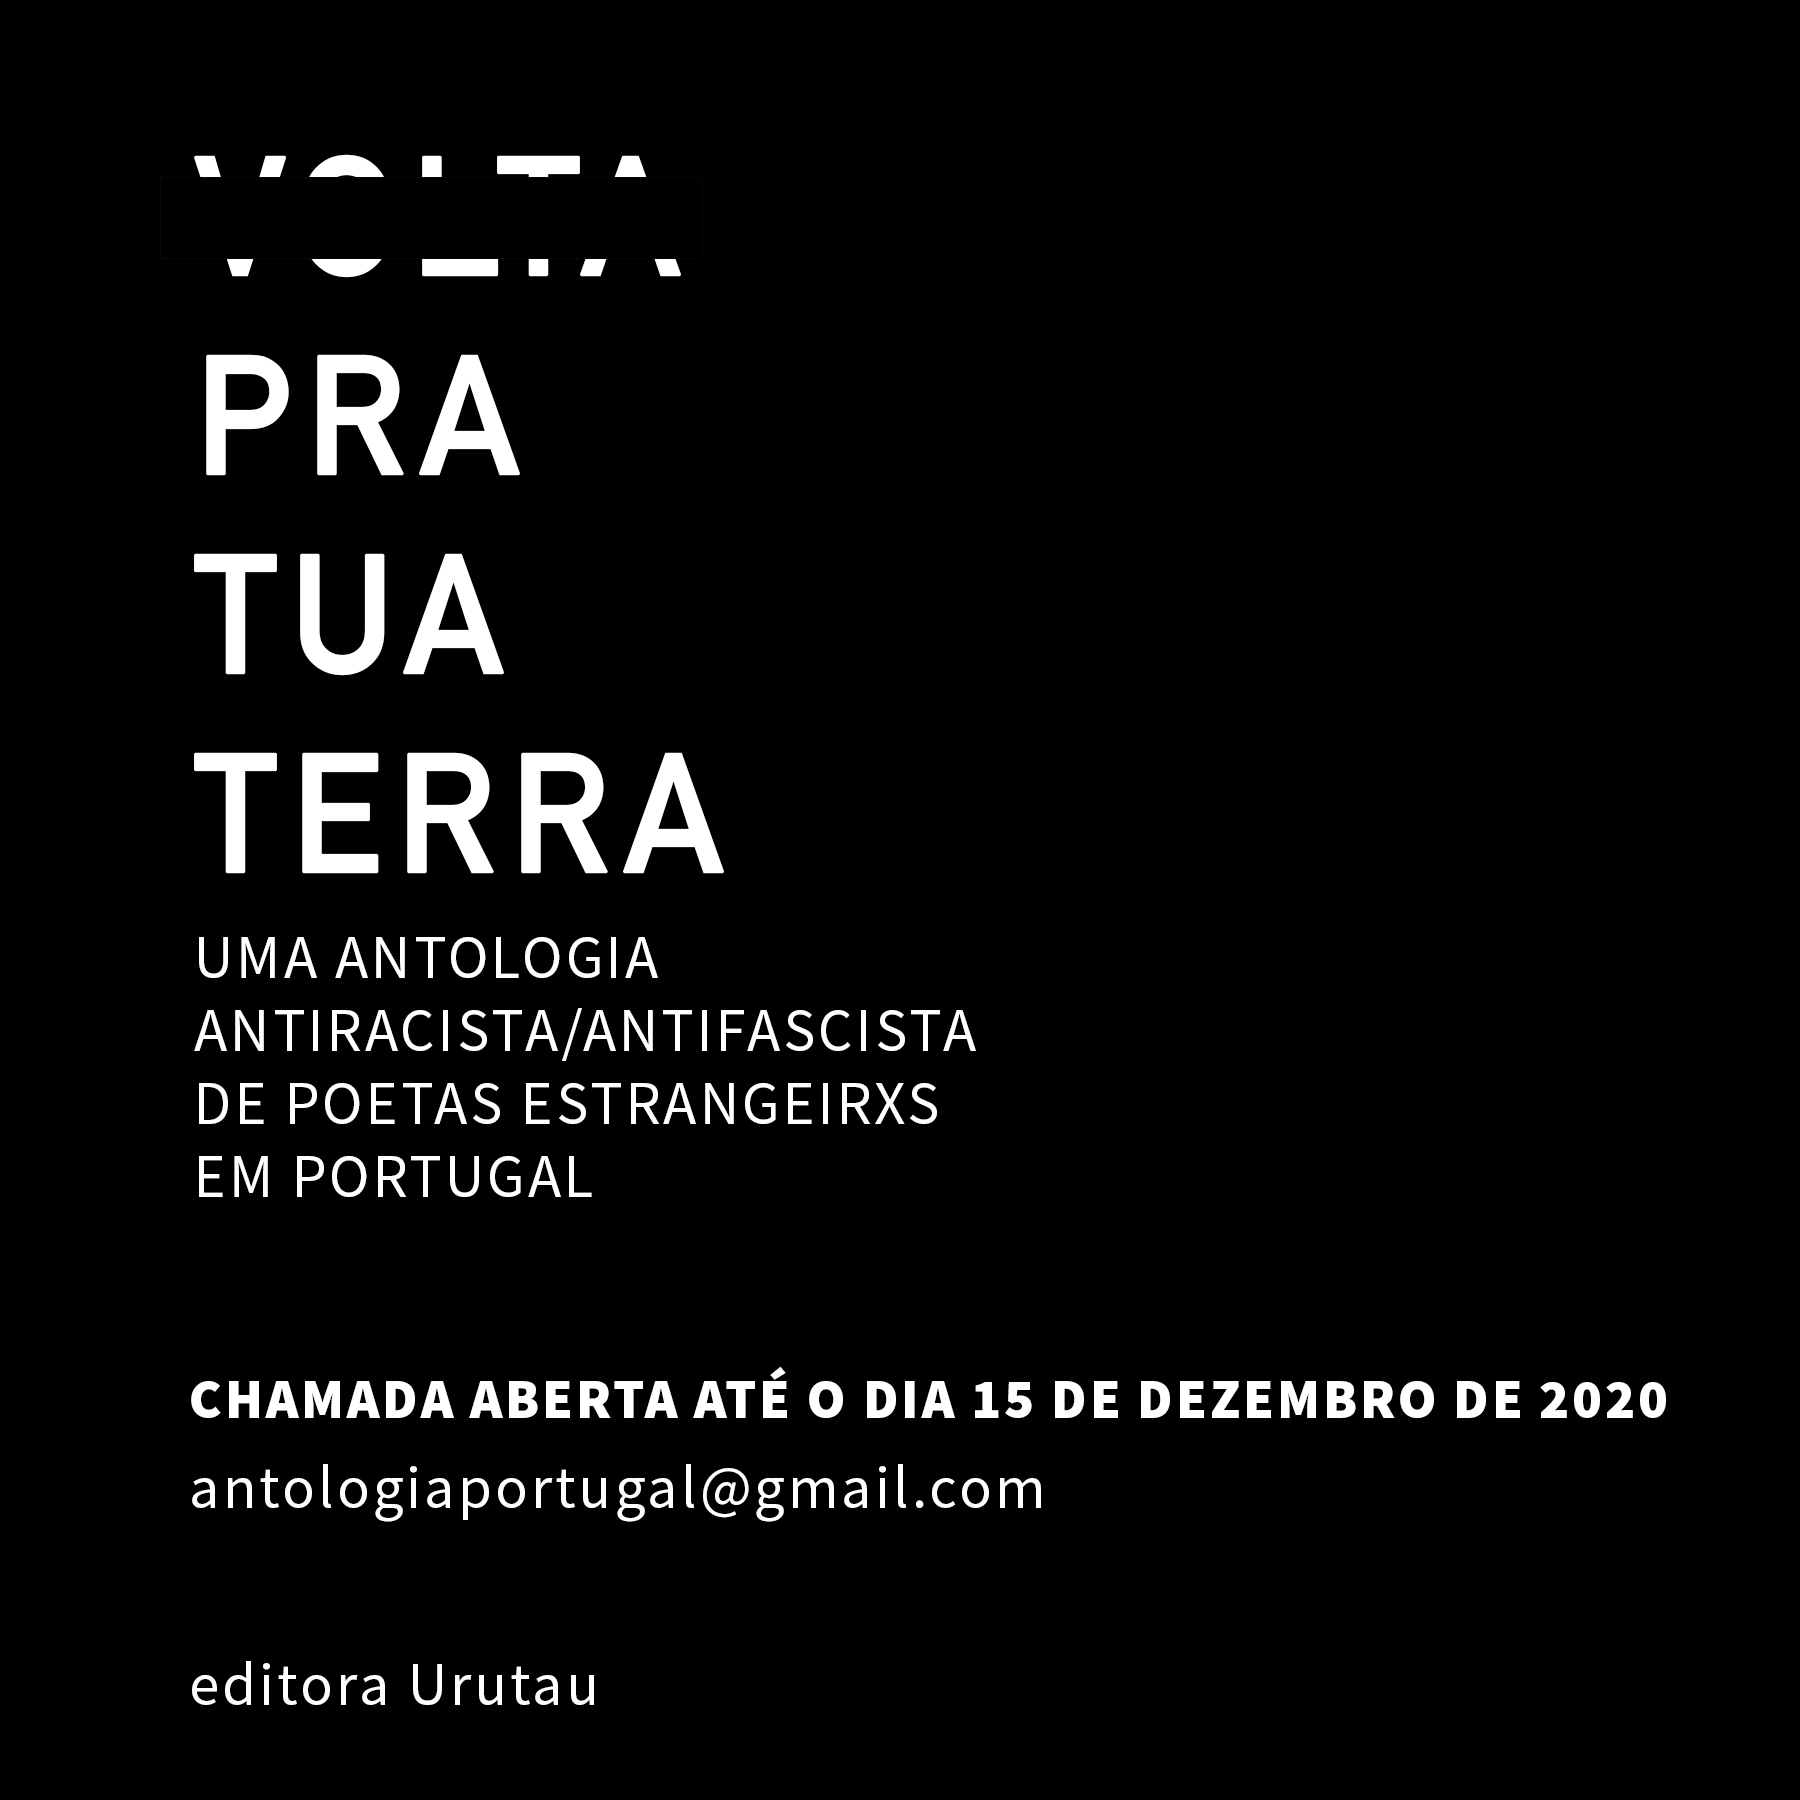 CHAMADA ABERTA PARA PUBLICAÇÃO DA ANTOLOGIA “———— para tua terra: uma antologia antiracista/antifascista de poetas estrangeirxs em Portugal”